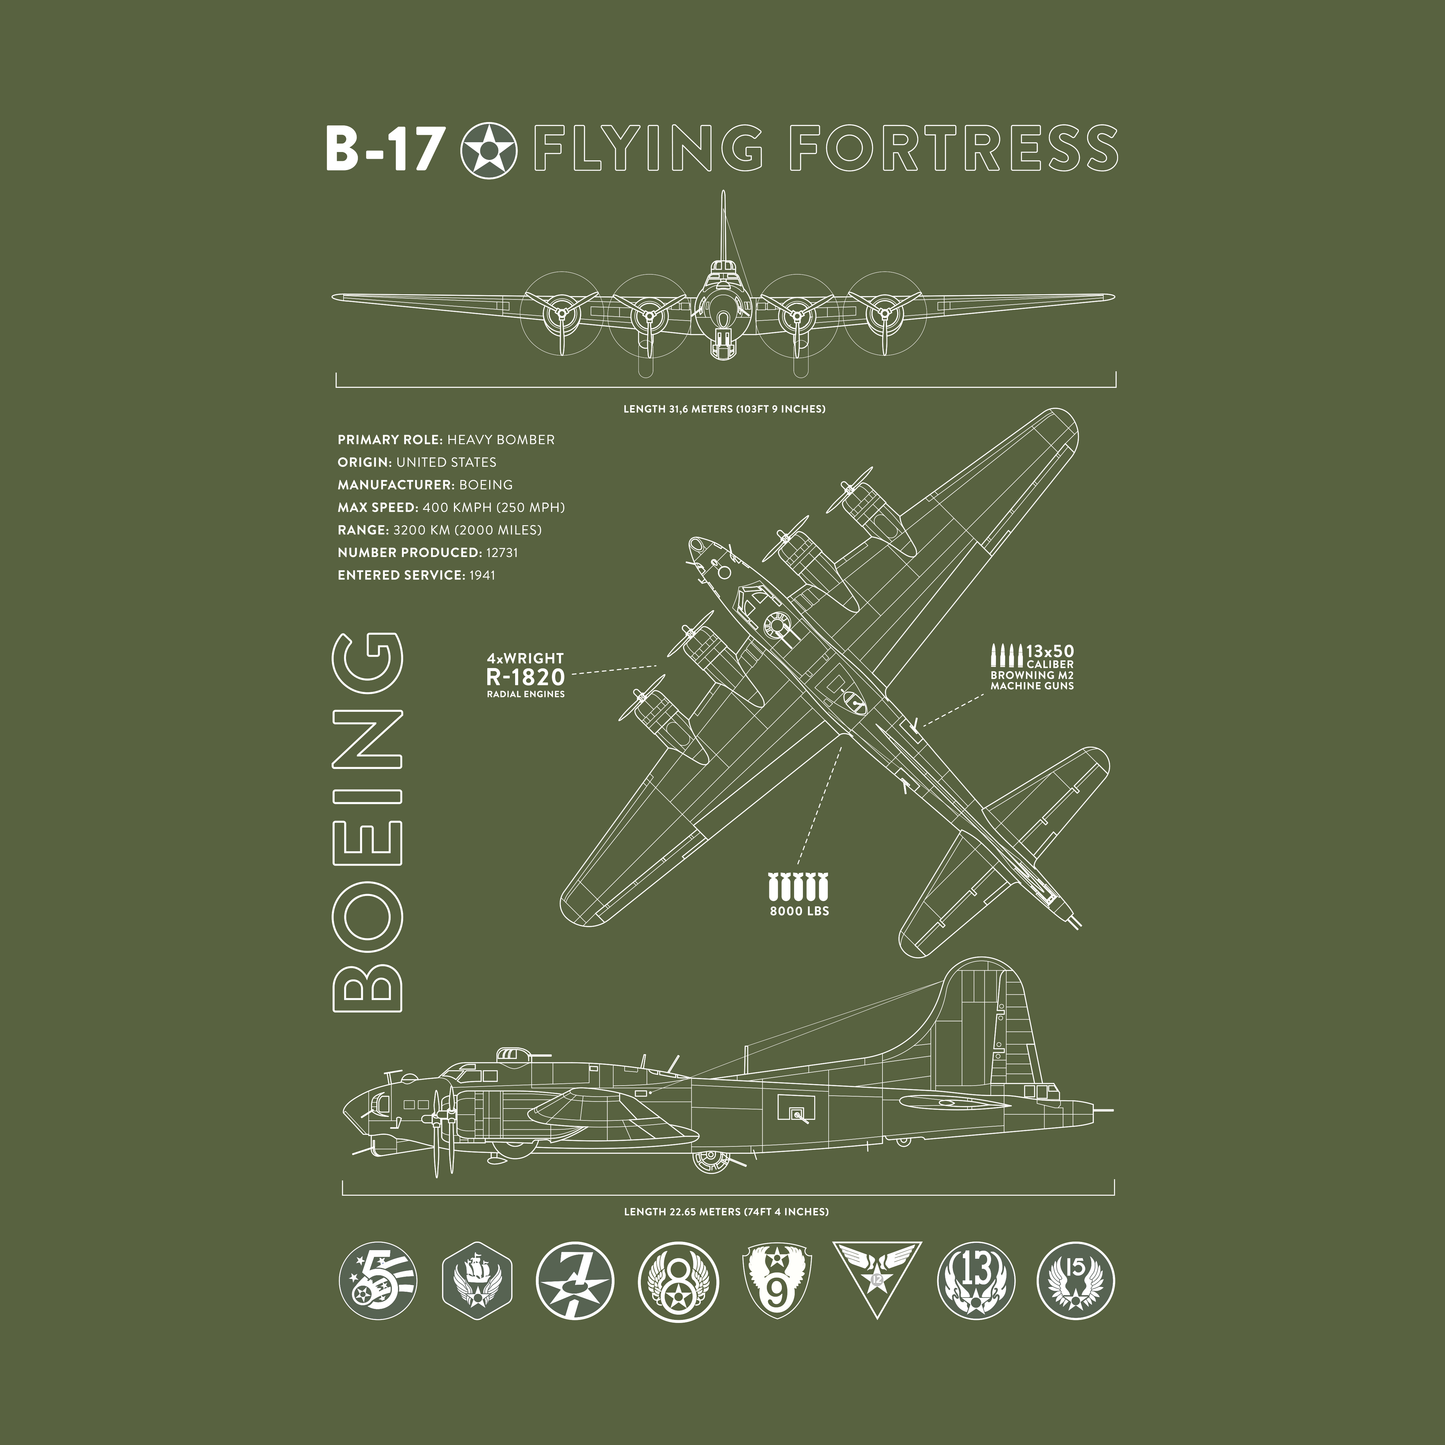 B-17 T-shirt Olive